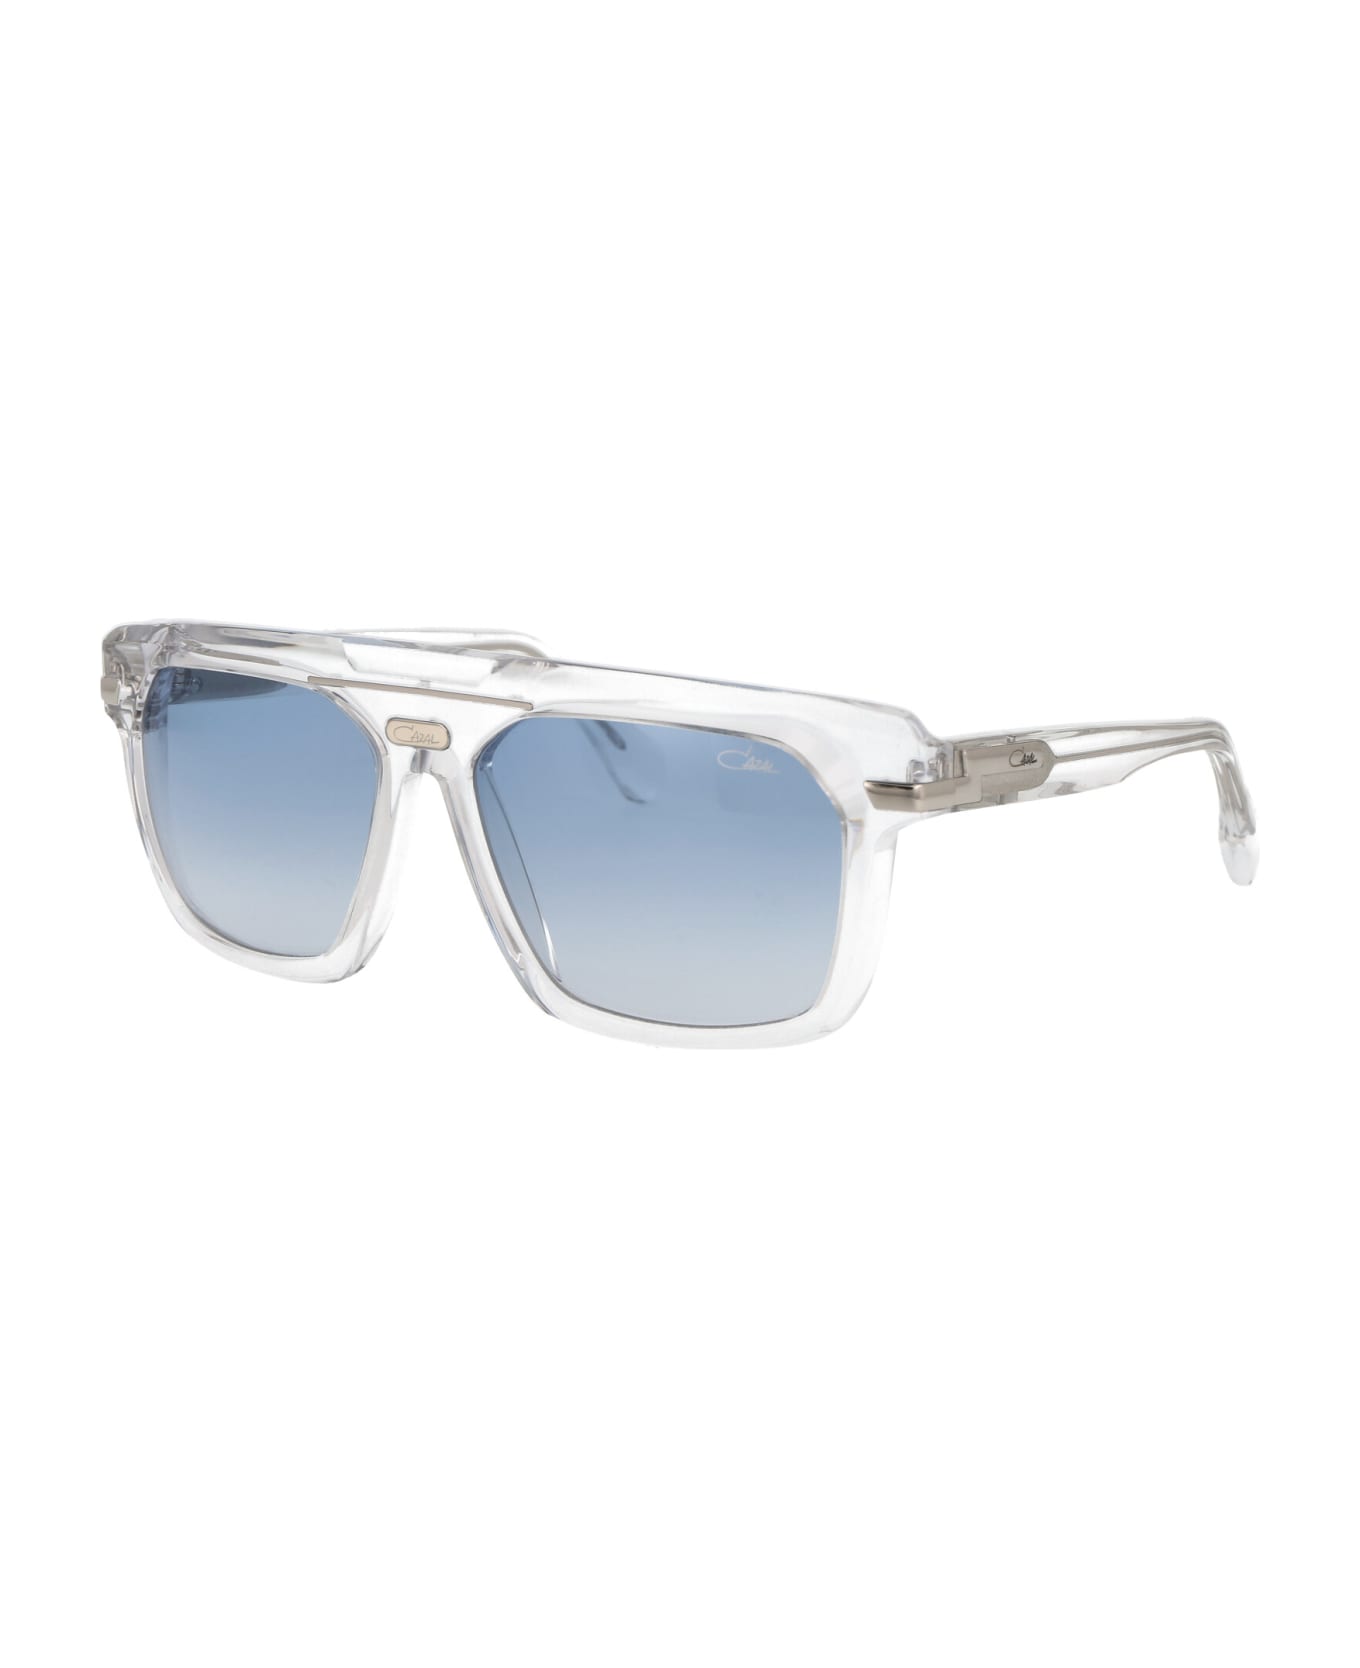 Cazal Mod. 8040 Sunglasses - 002 CRYSTAL